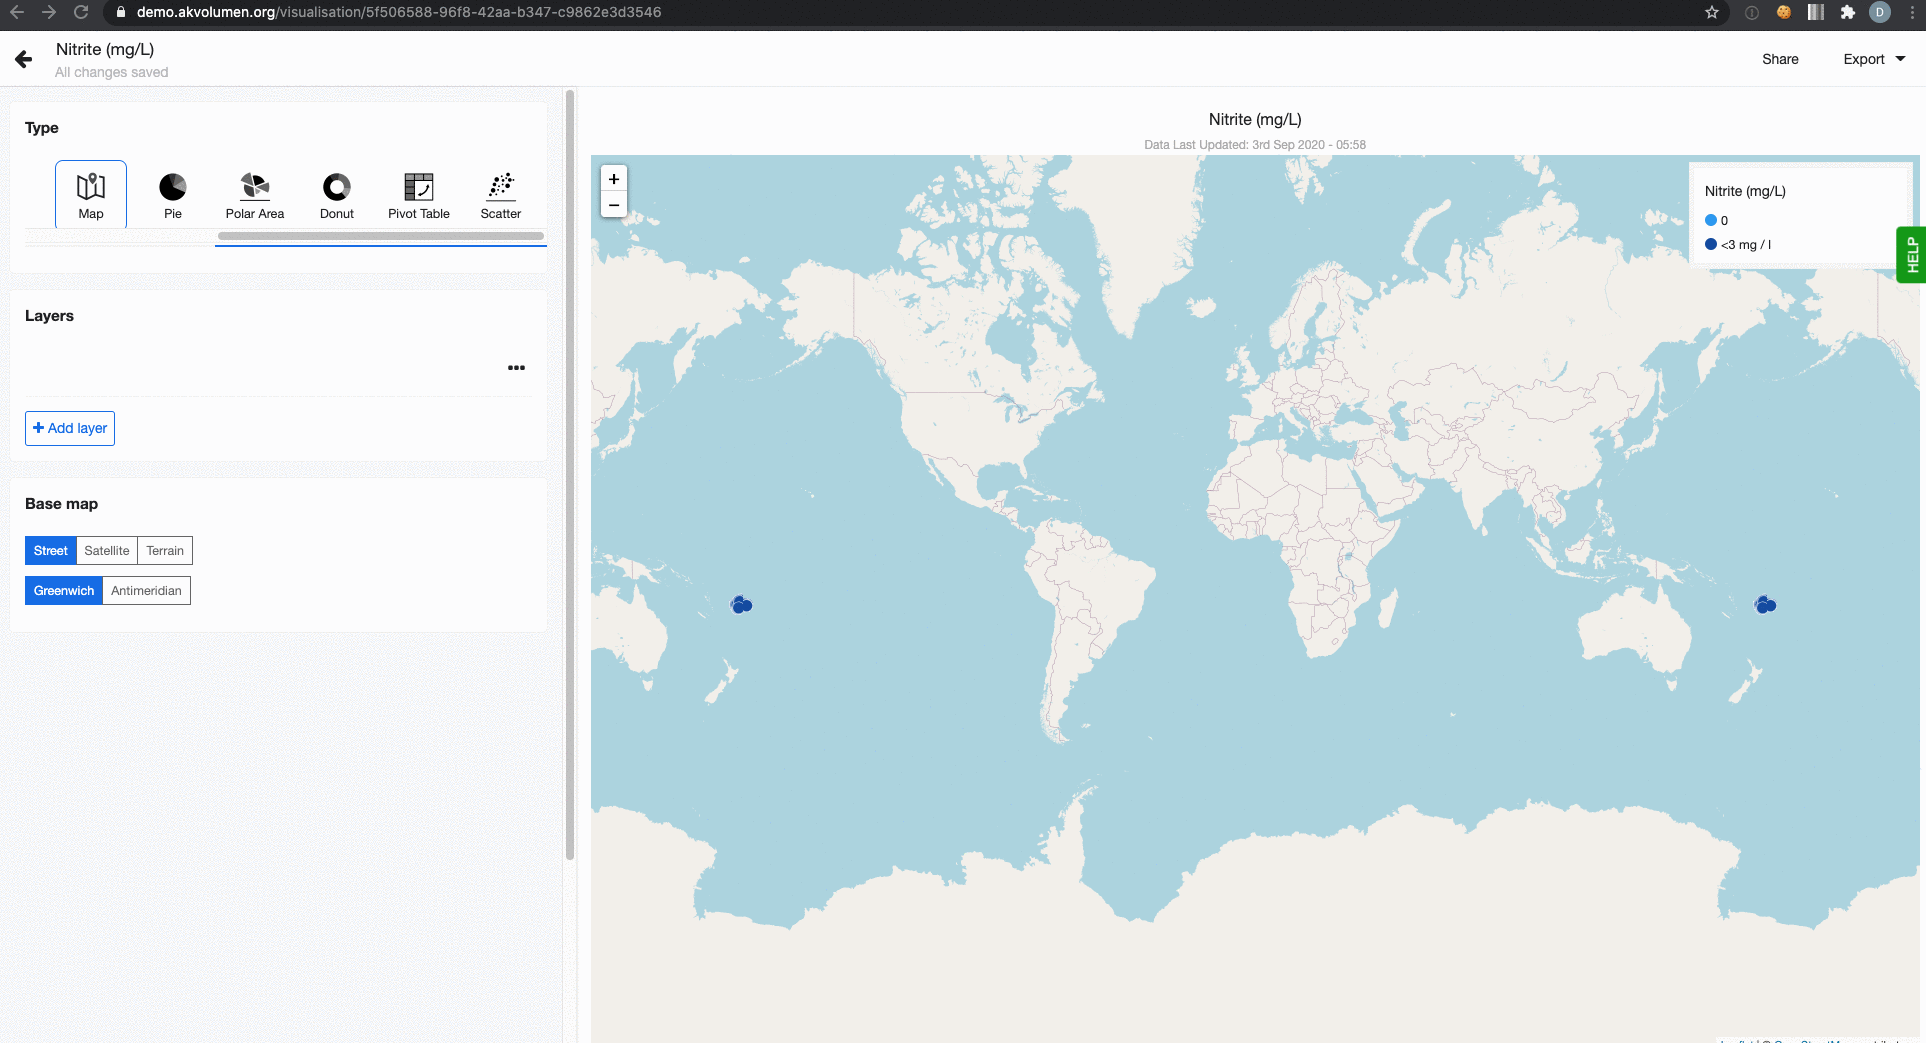 Base map settings